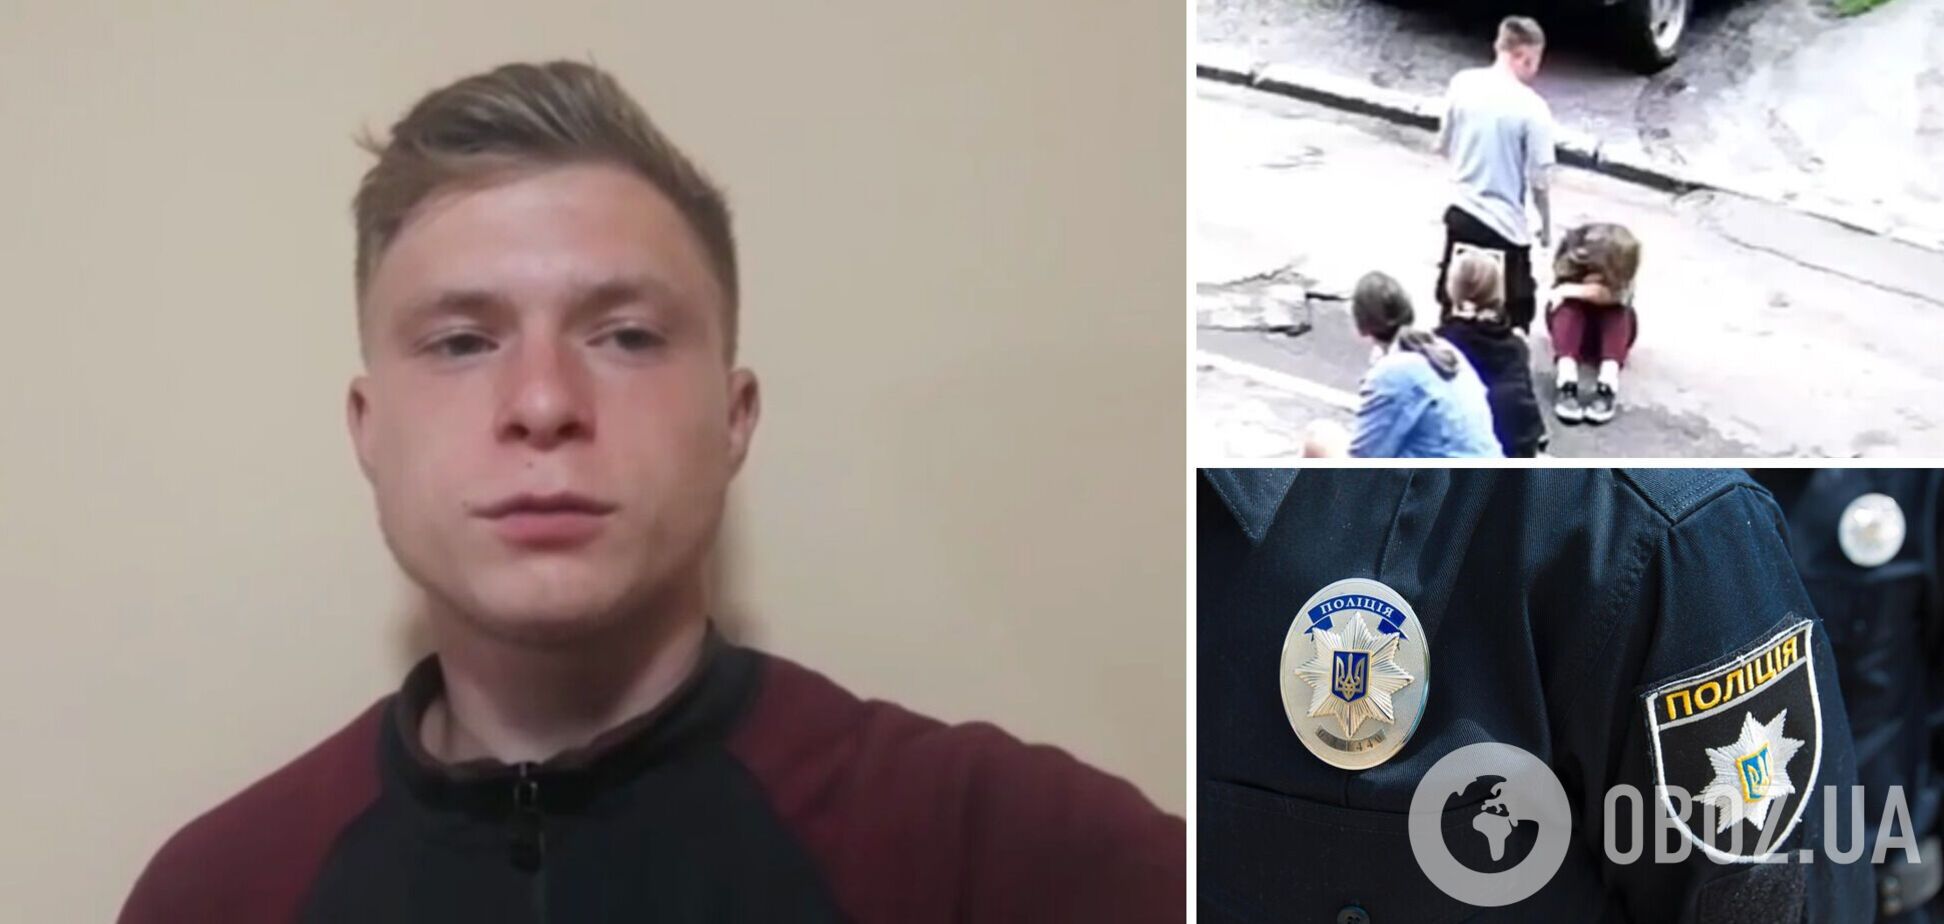 Парень, избивший 14-летнюю девочку в Харькове, записал видео с извинениями